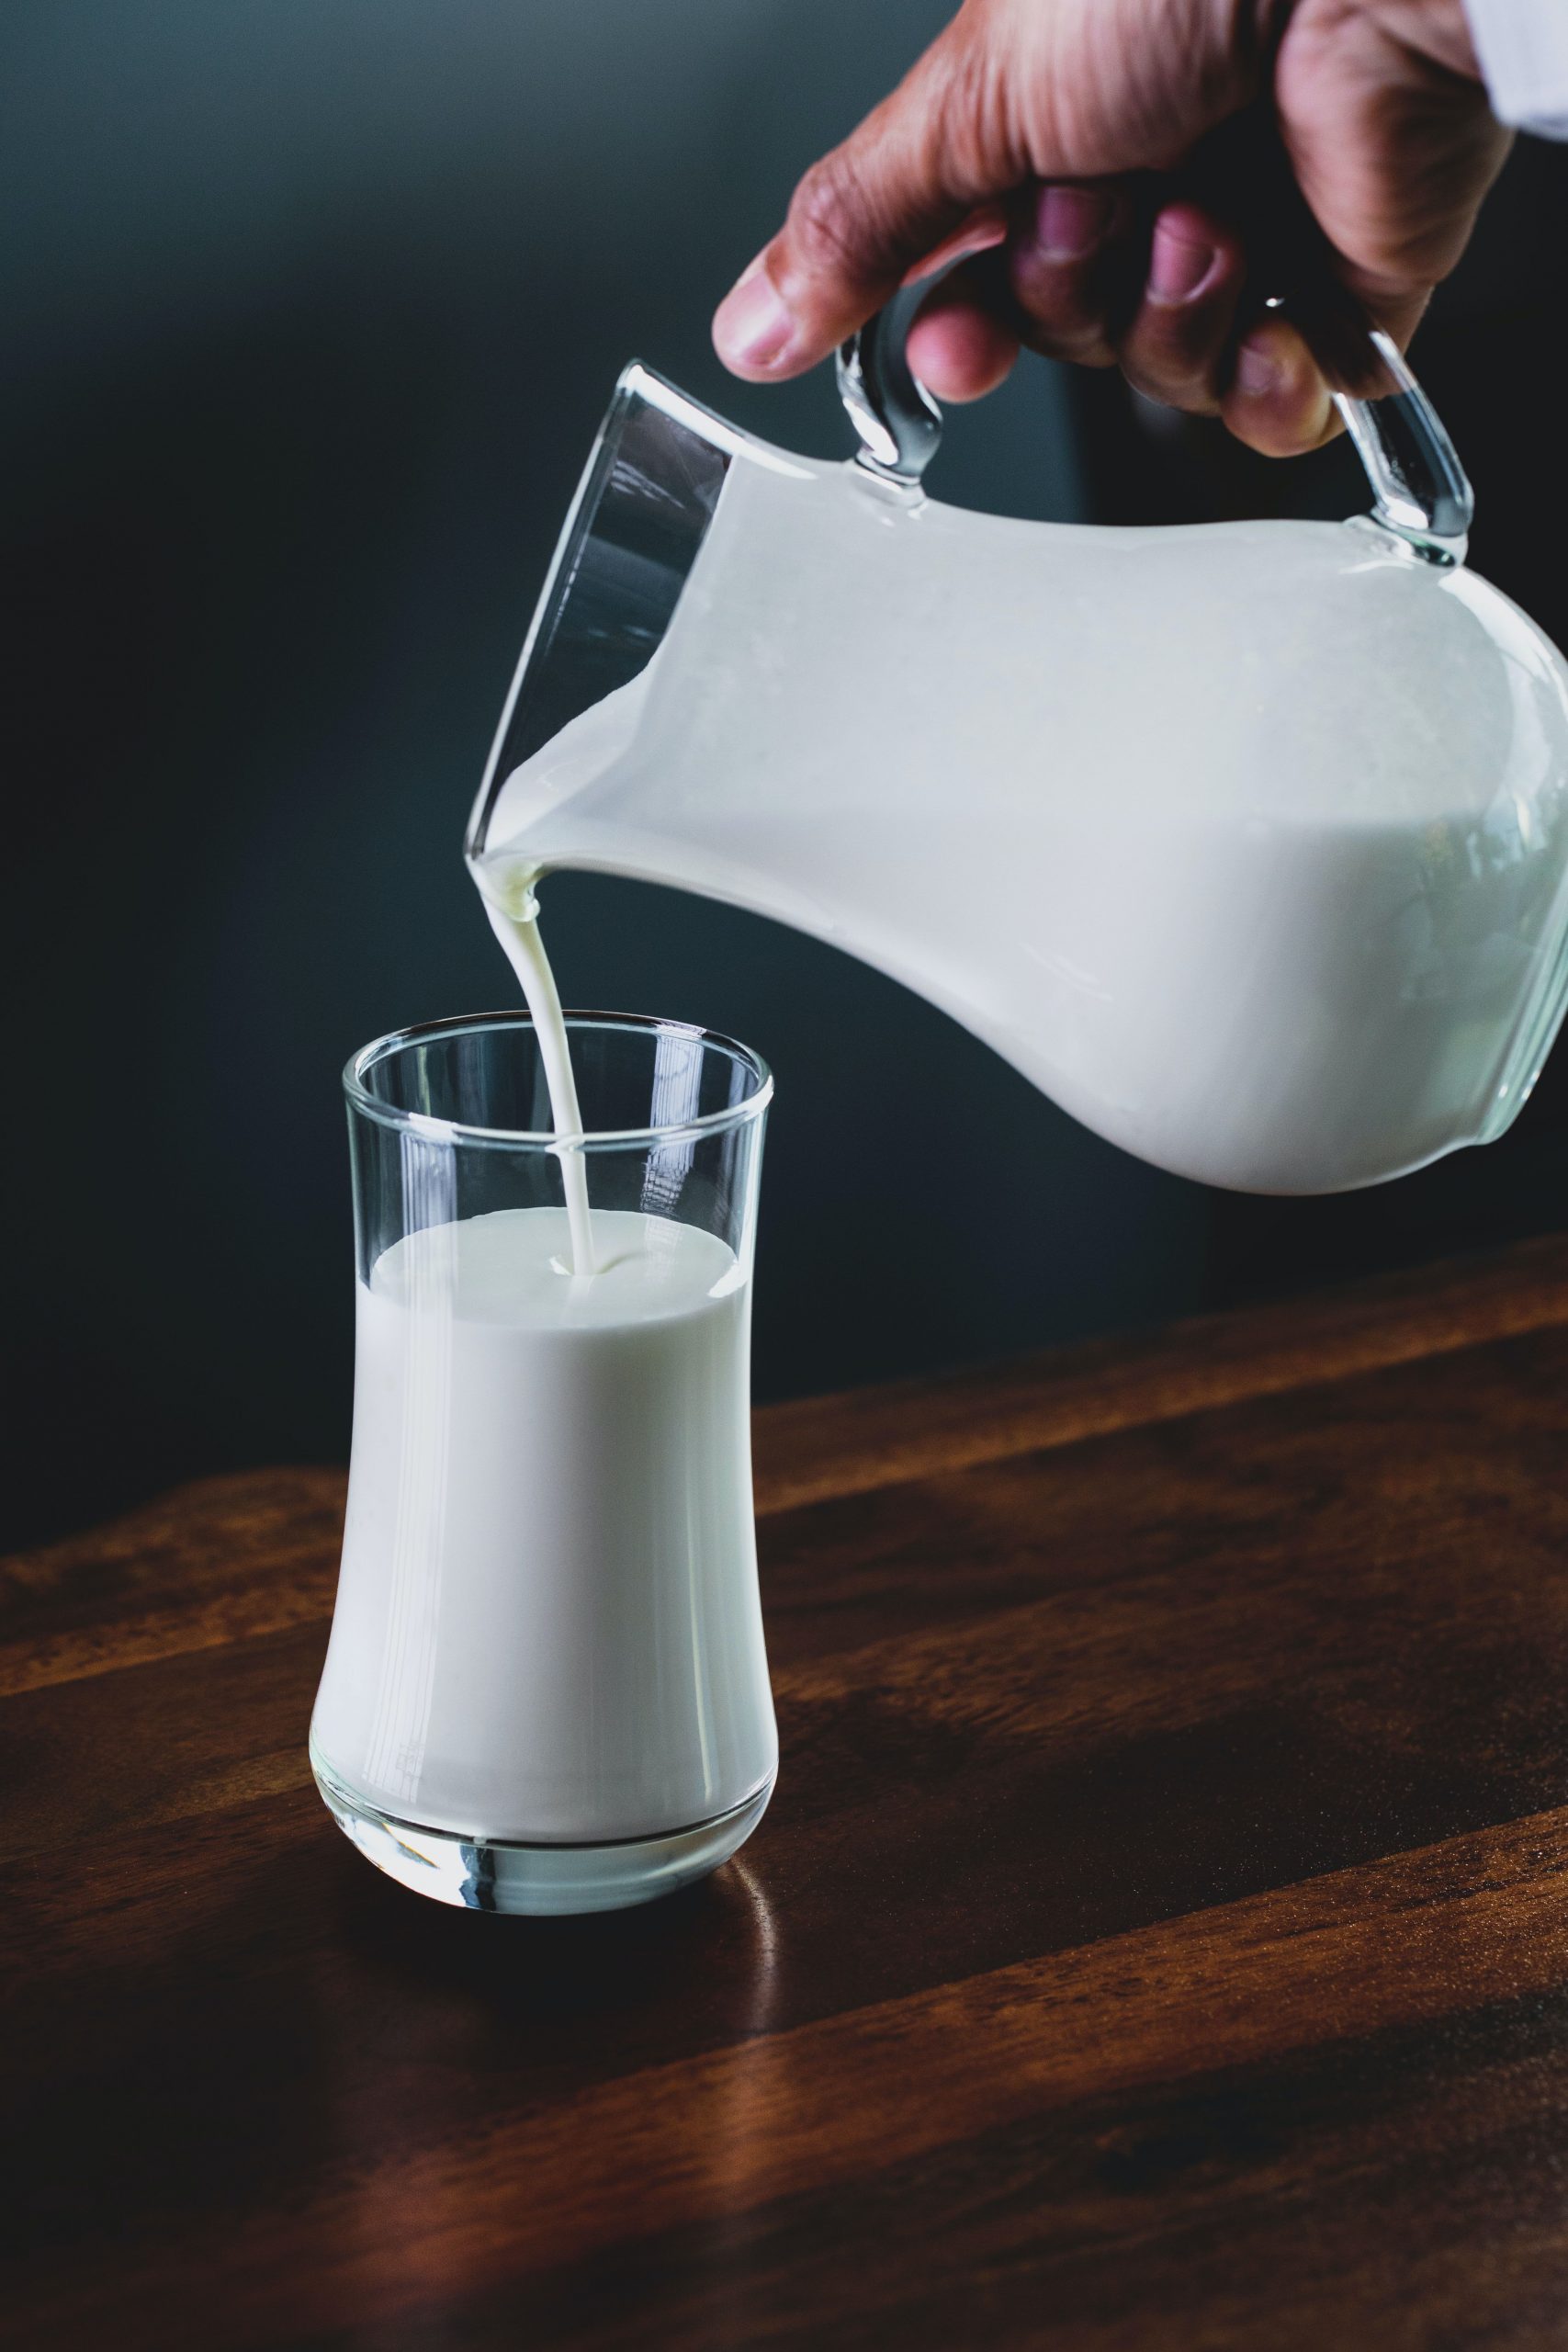 दूध में डालकर पिएं बस ये एक चीज, मिलेंगे 5 चमत्कारी फायदे